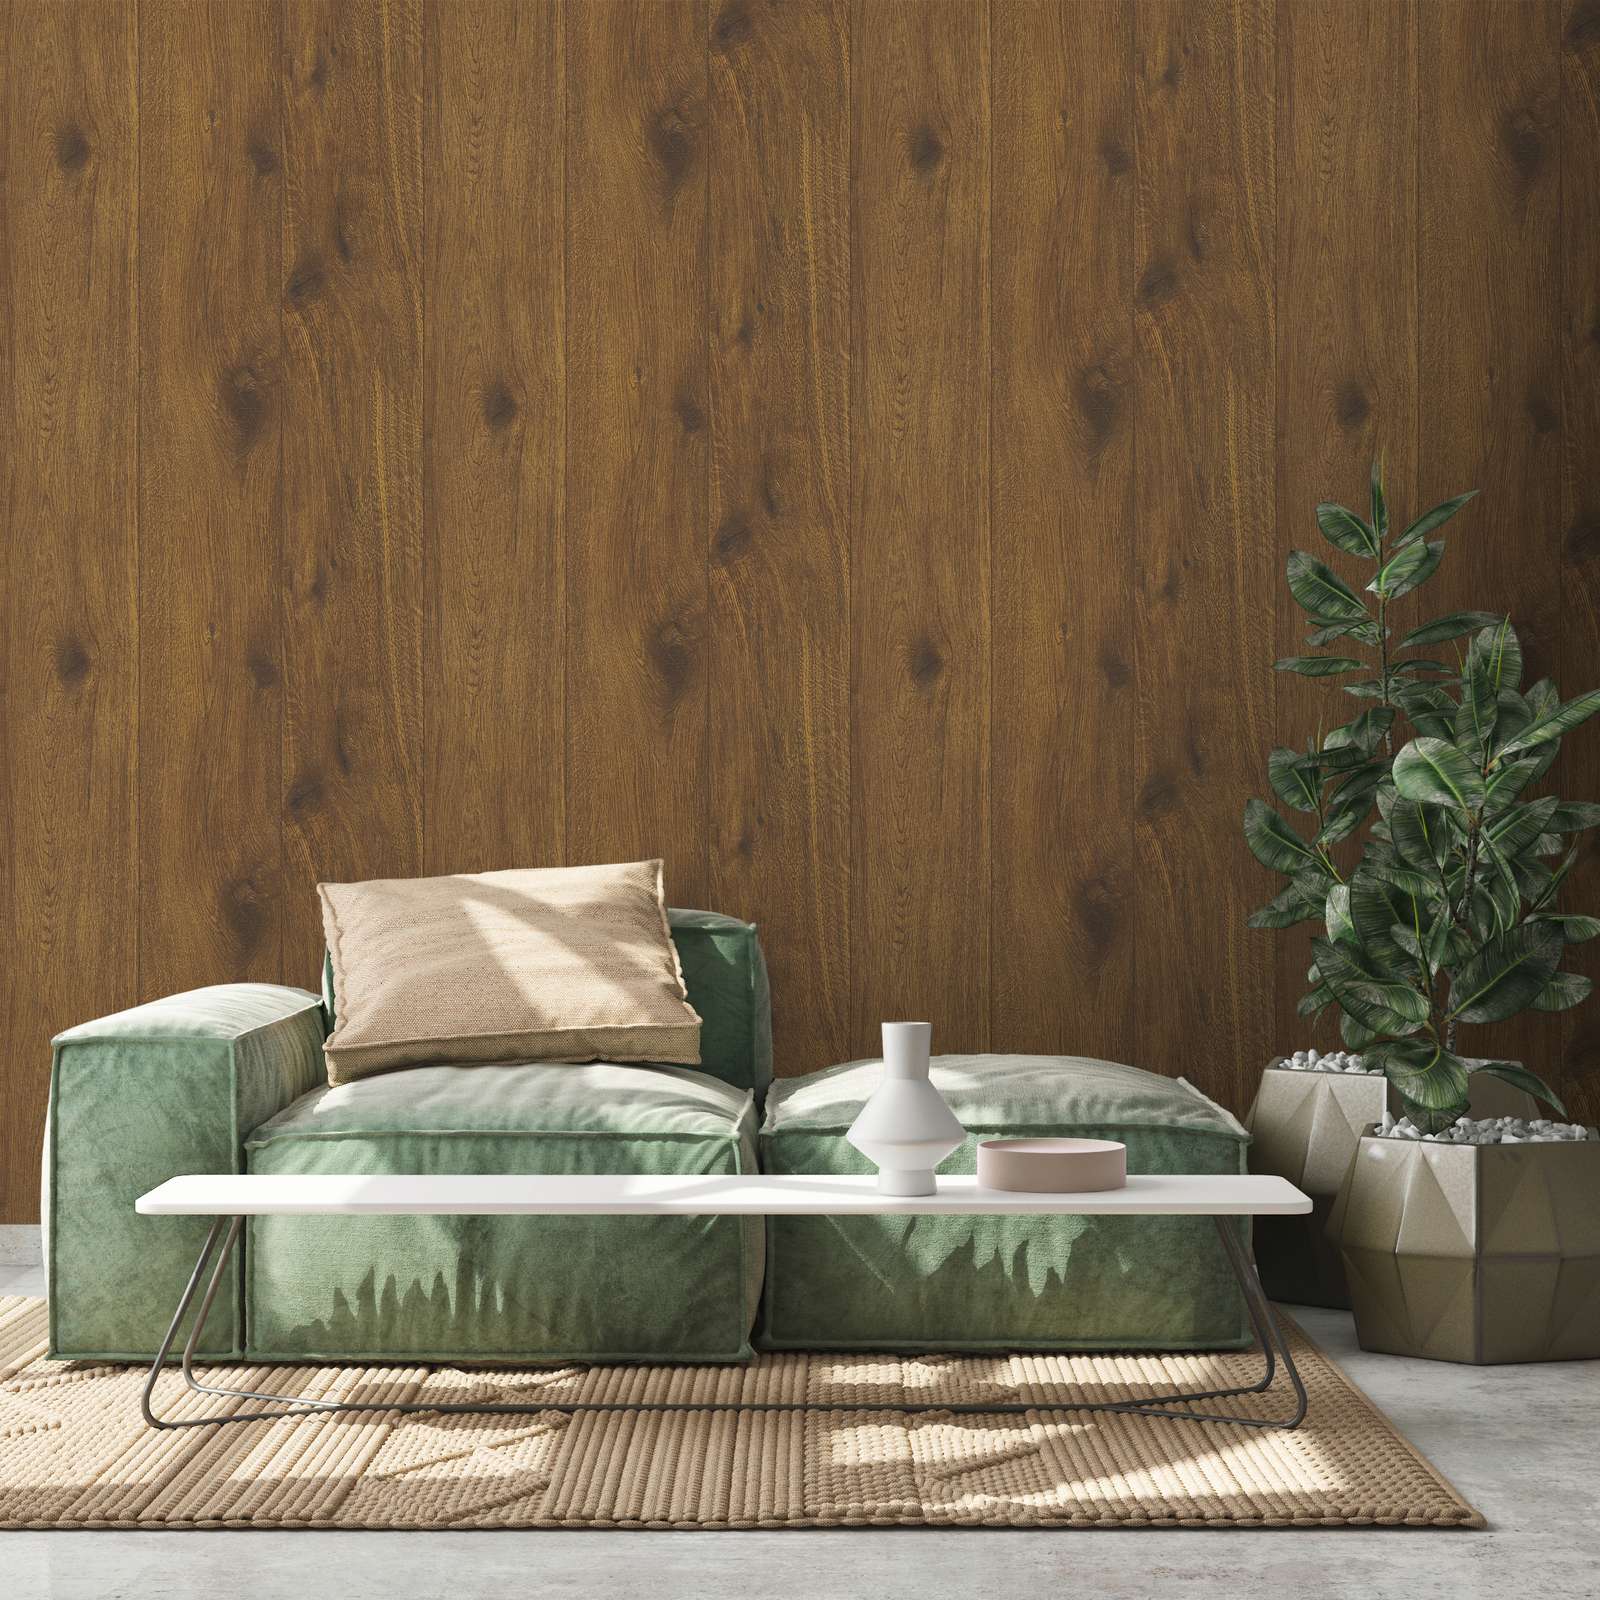             Behang met houteffect en natuurlijke houtnerf - bruin
        